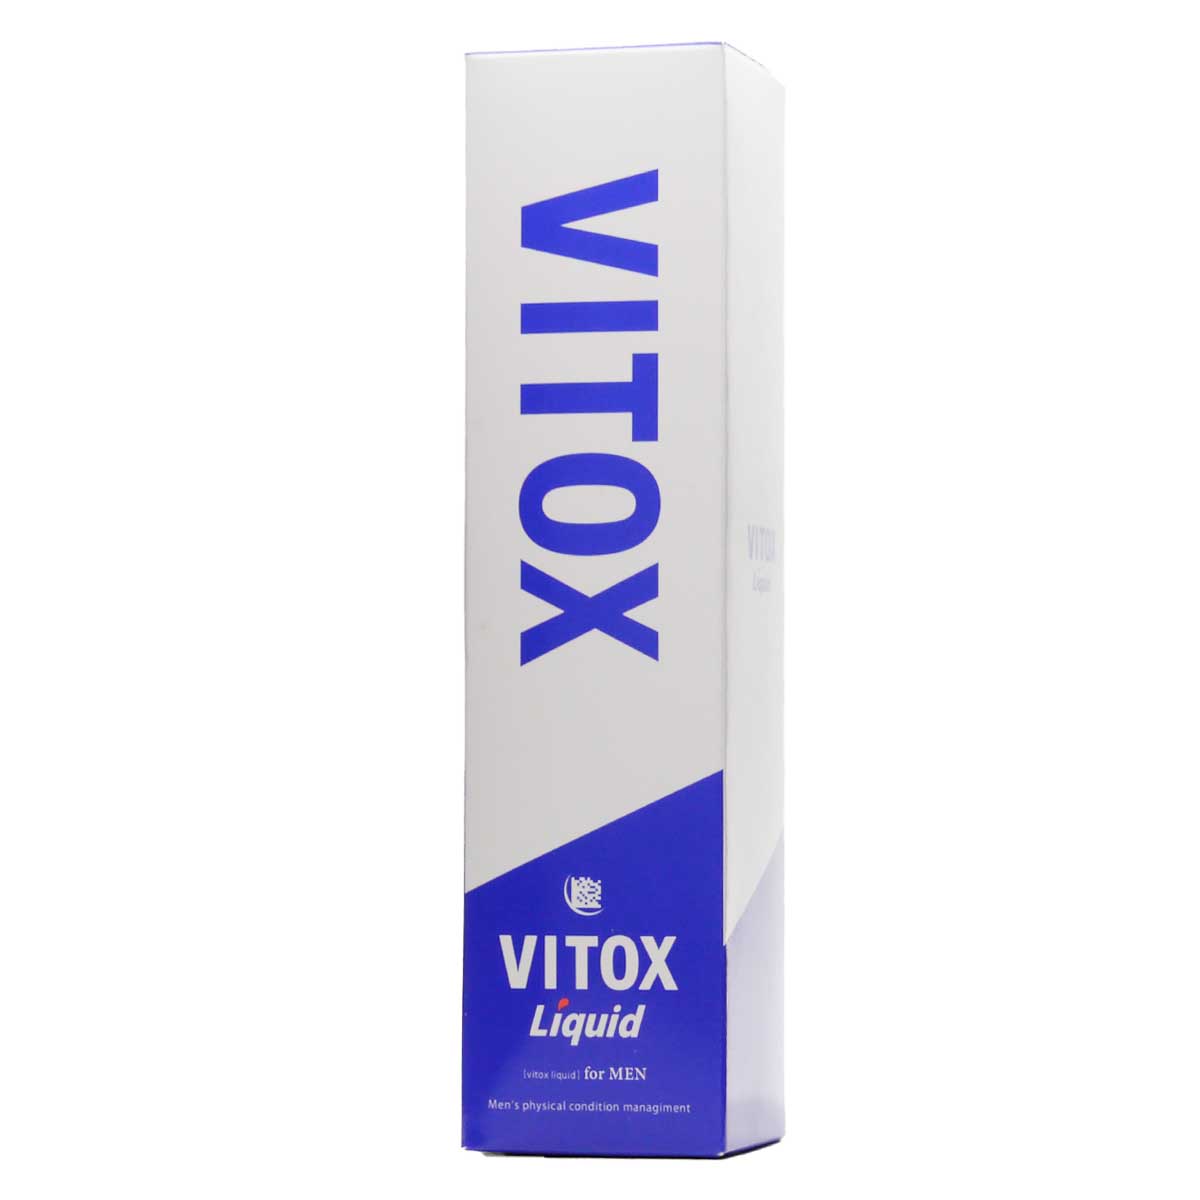 ヴィトックス リキッド vitox liquid 120ml ( 約1ヵ月分 ) MEN LABO ビトックス 配送料無料NYH /  ヴィトックスリキッドF06-A1 / VITXLQ-01P